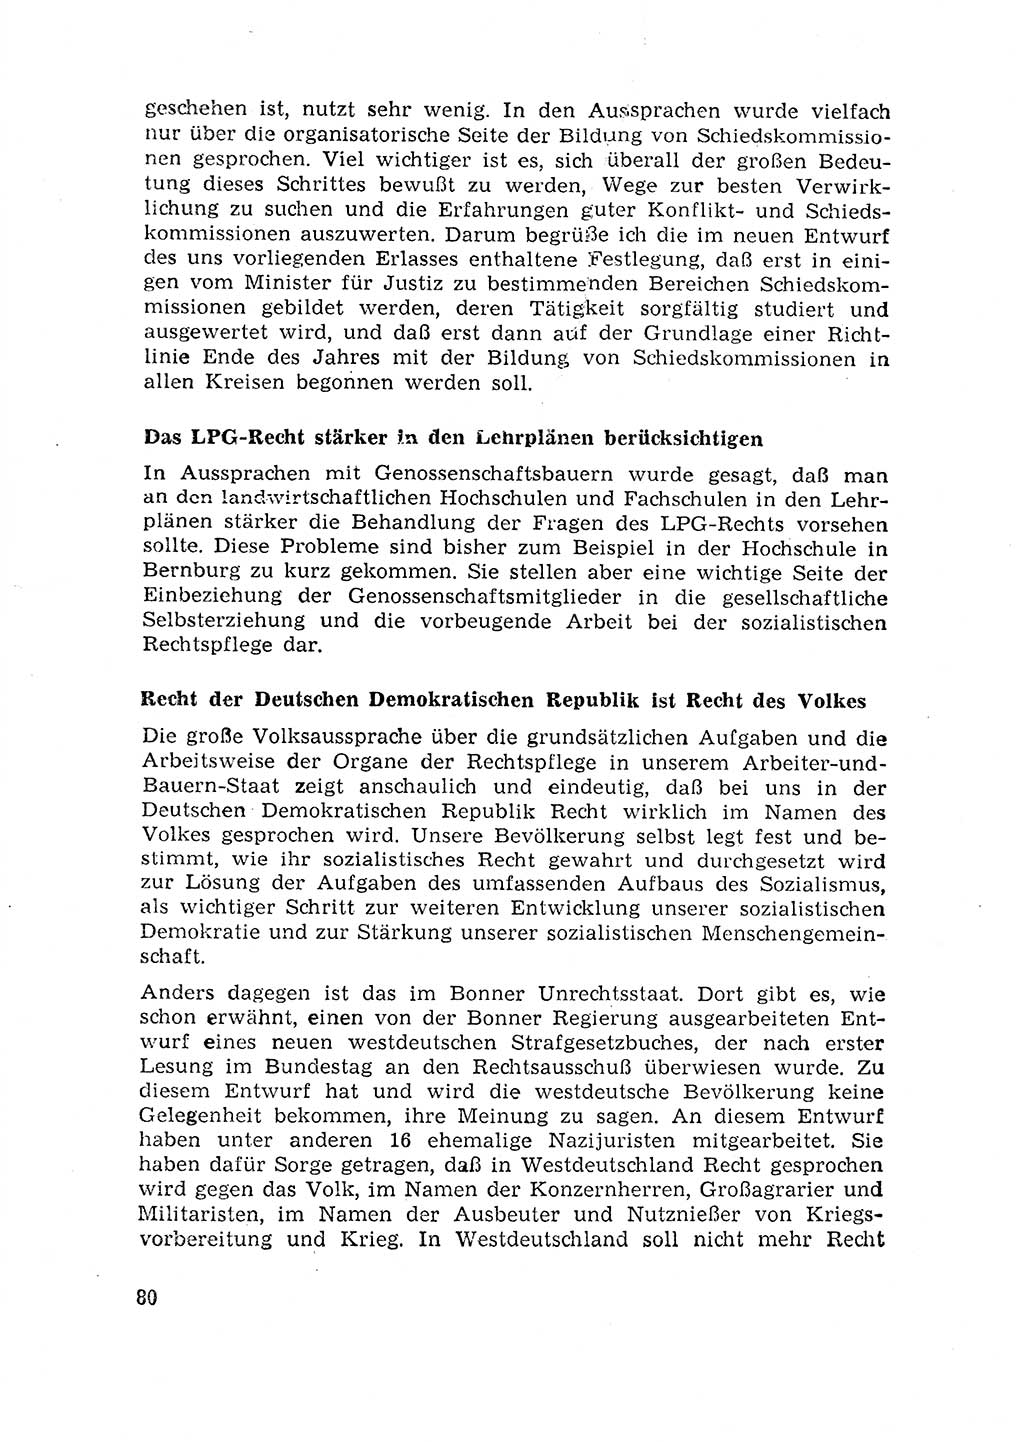 Rechtspflegeerlaß [Deutsche Demokratische Republik (DDR)] 1963, Seite 80 (R.-Pfl.-Erl. DDR 1963, S. 80)